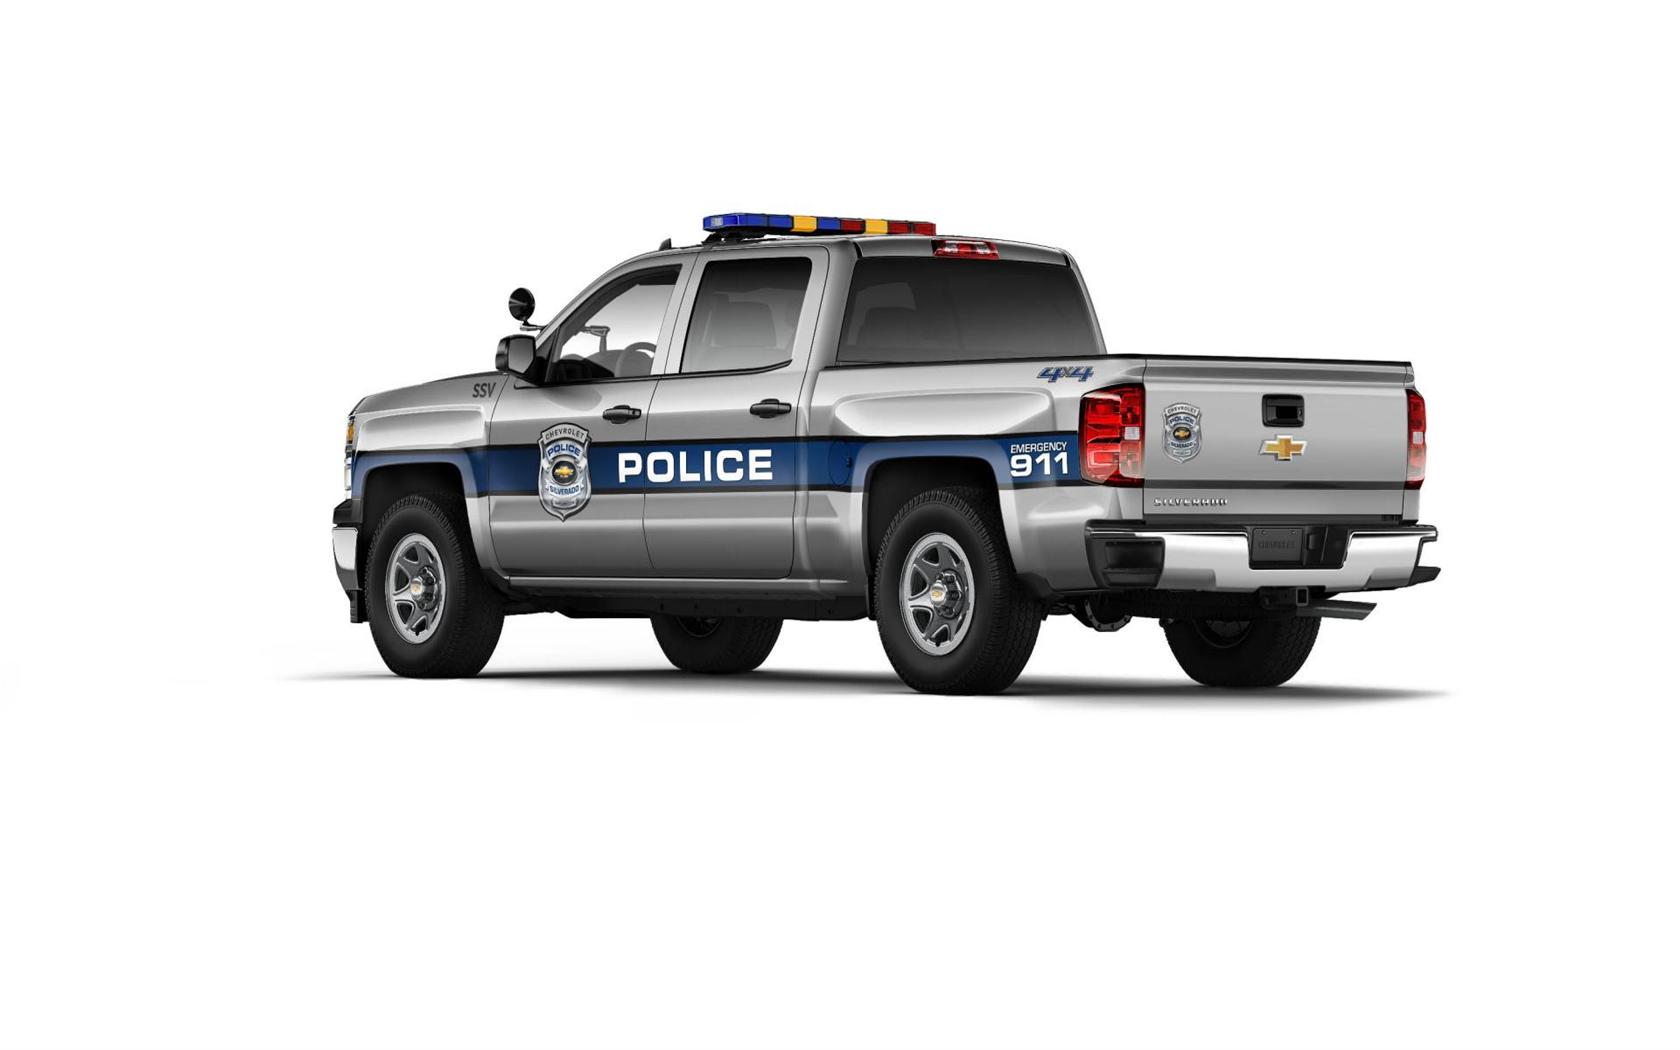 2015 Chevrolet Silverado Special Service Vehicle